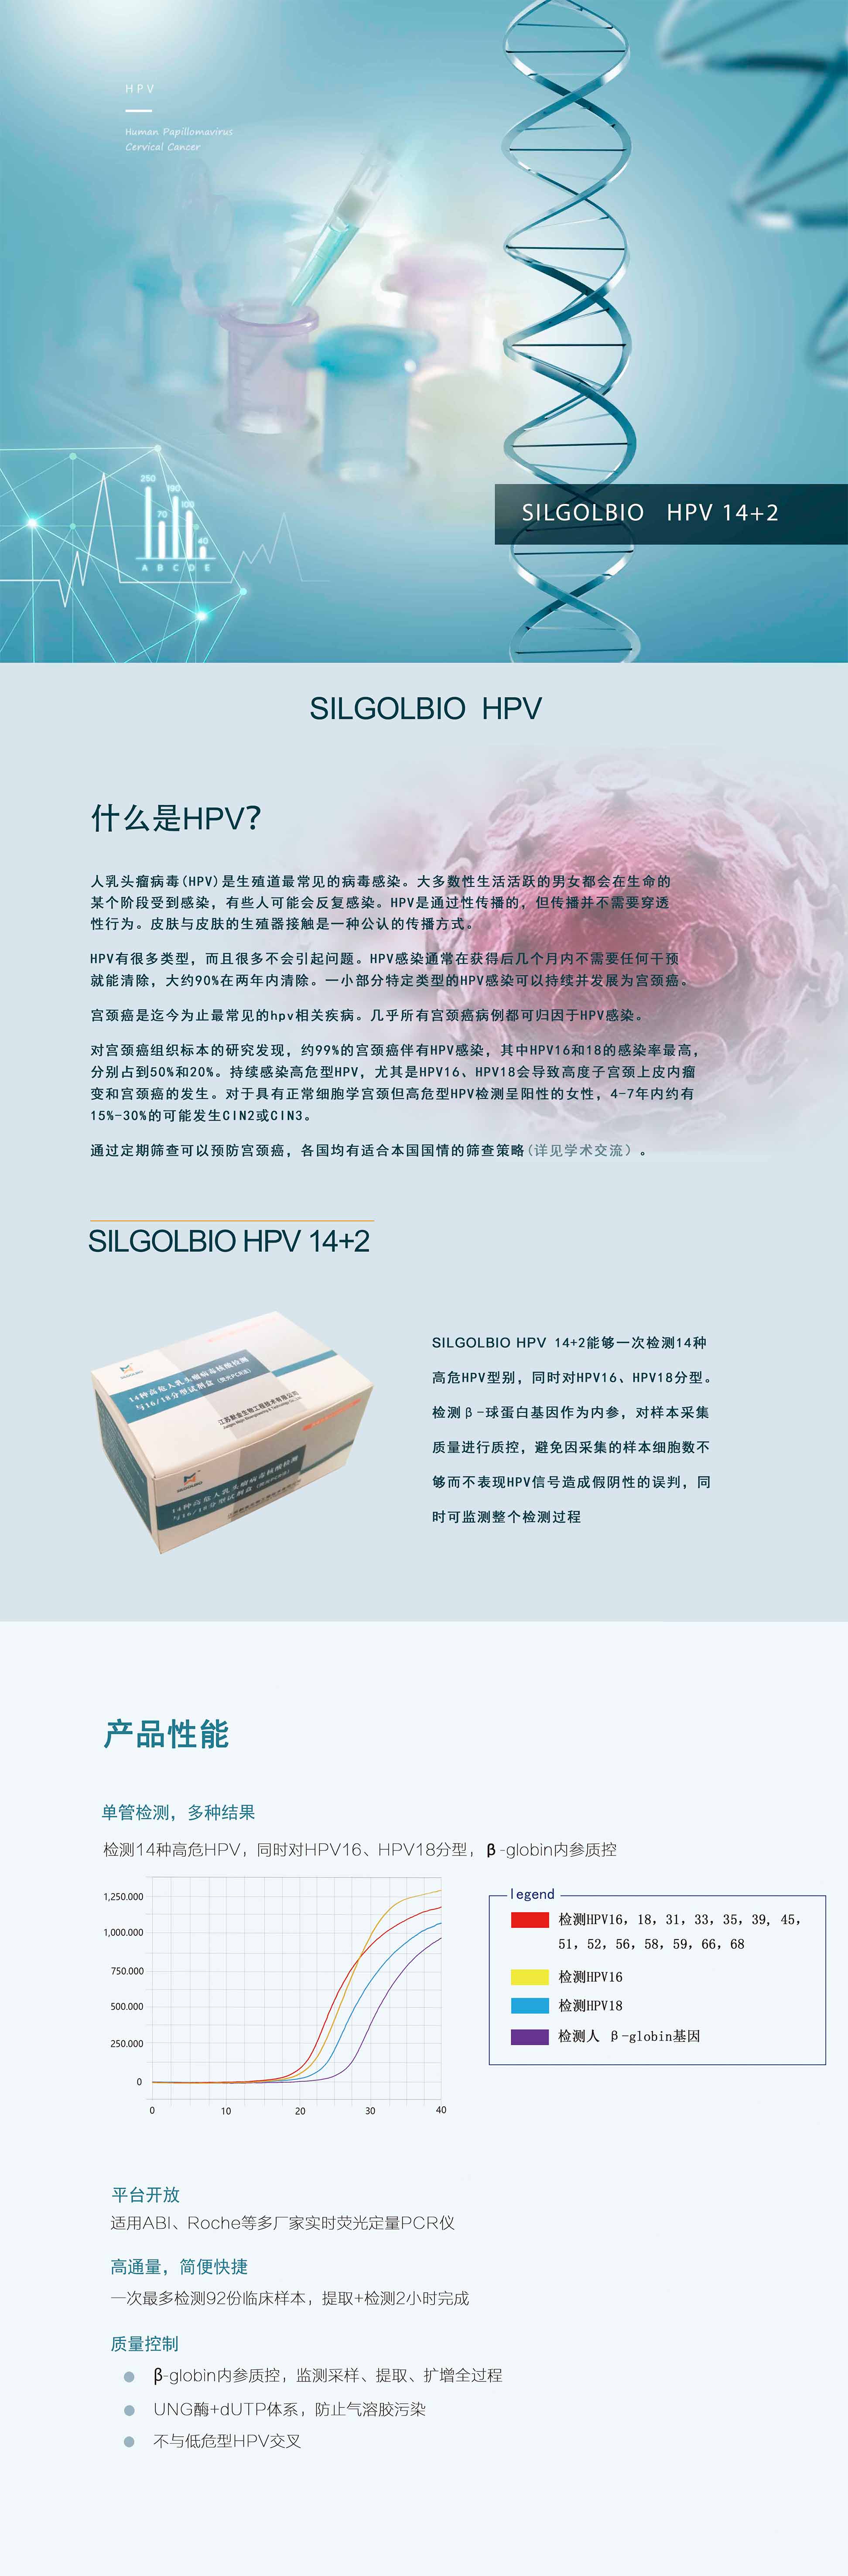 SILGOLBIO HPV 14+2